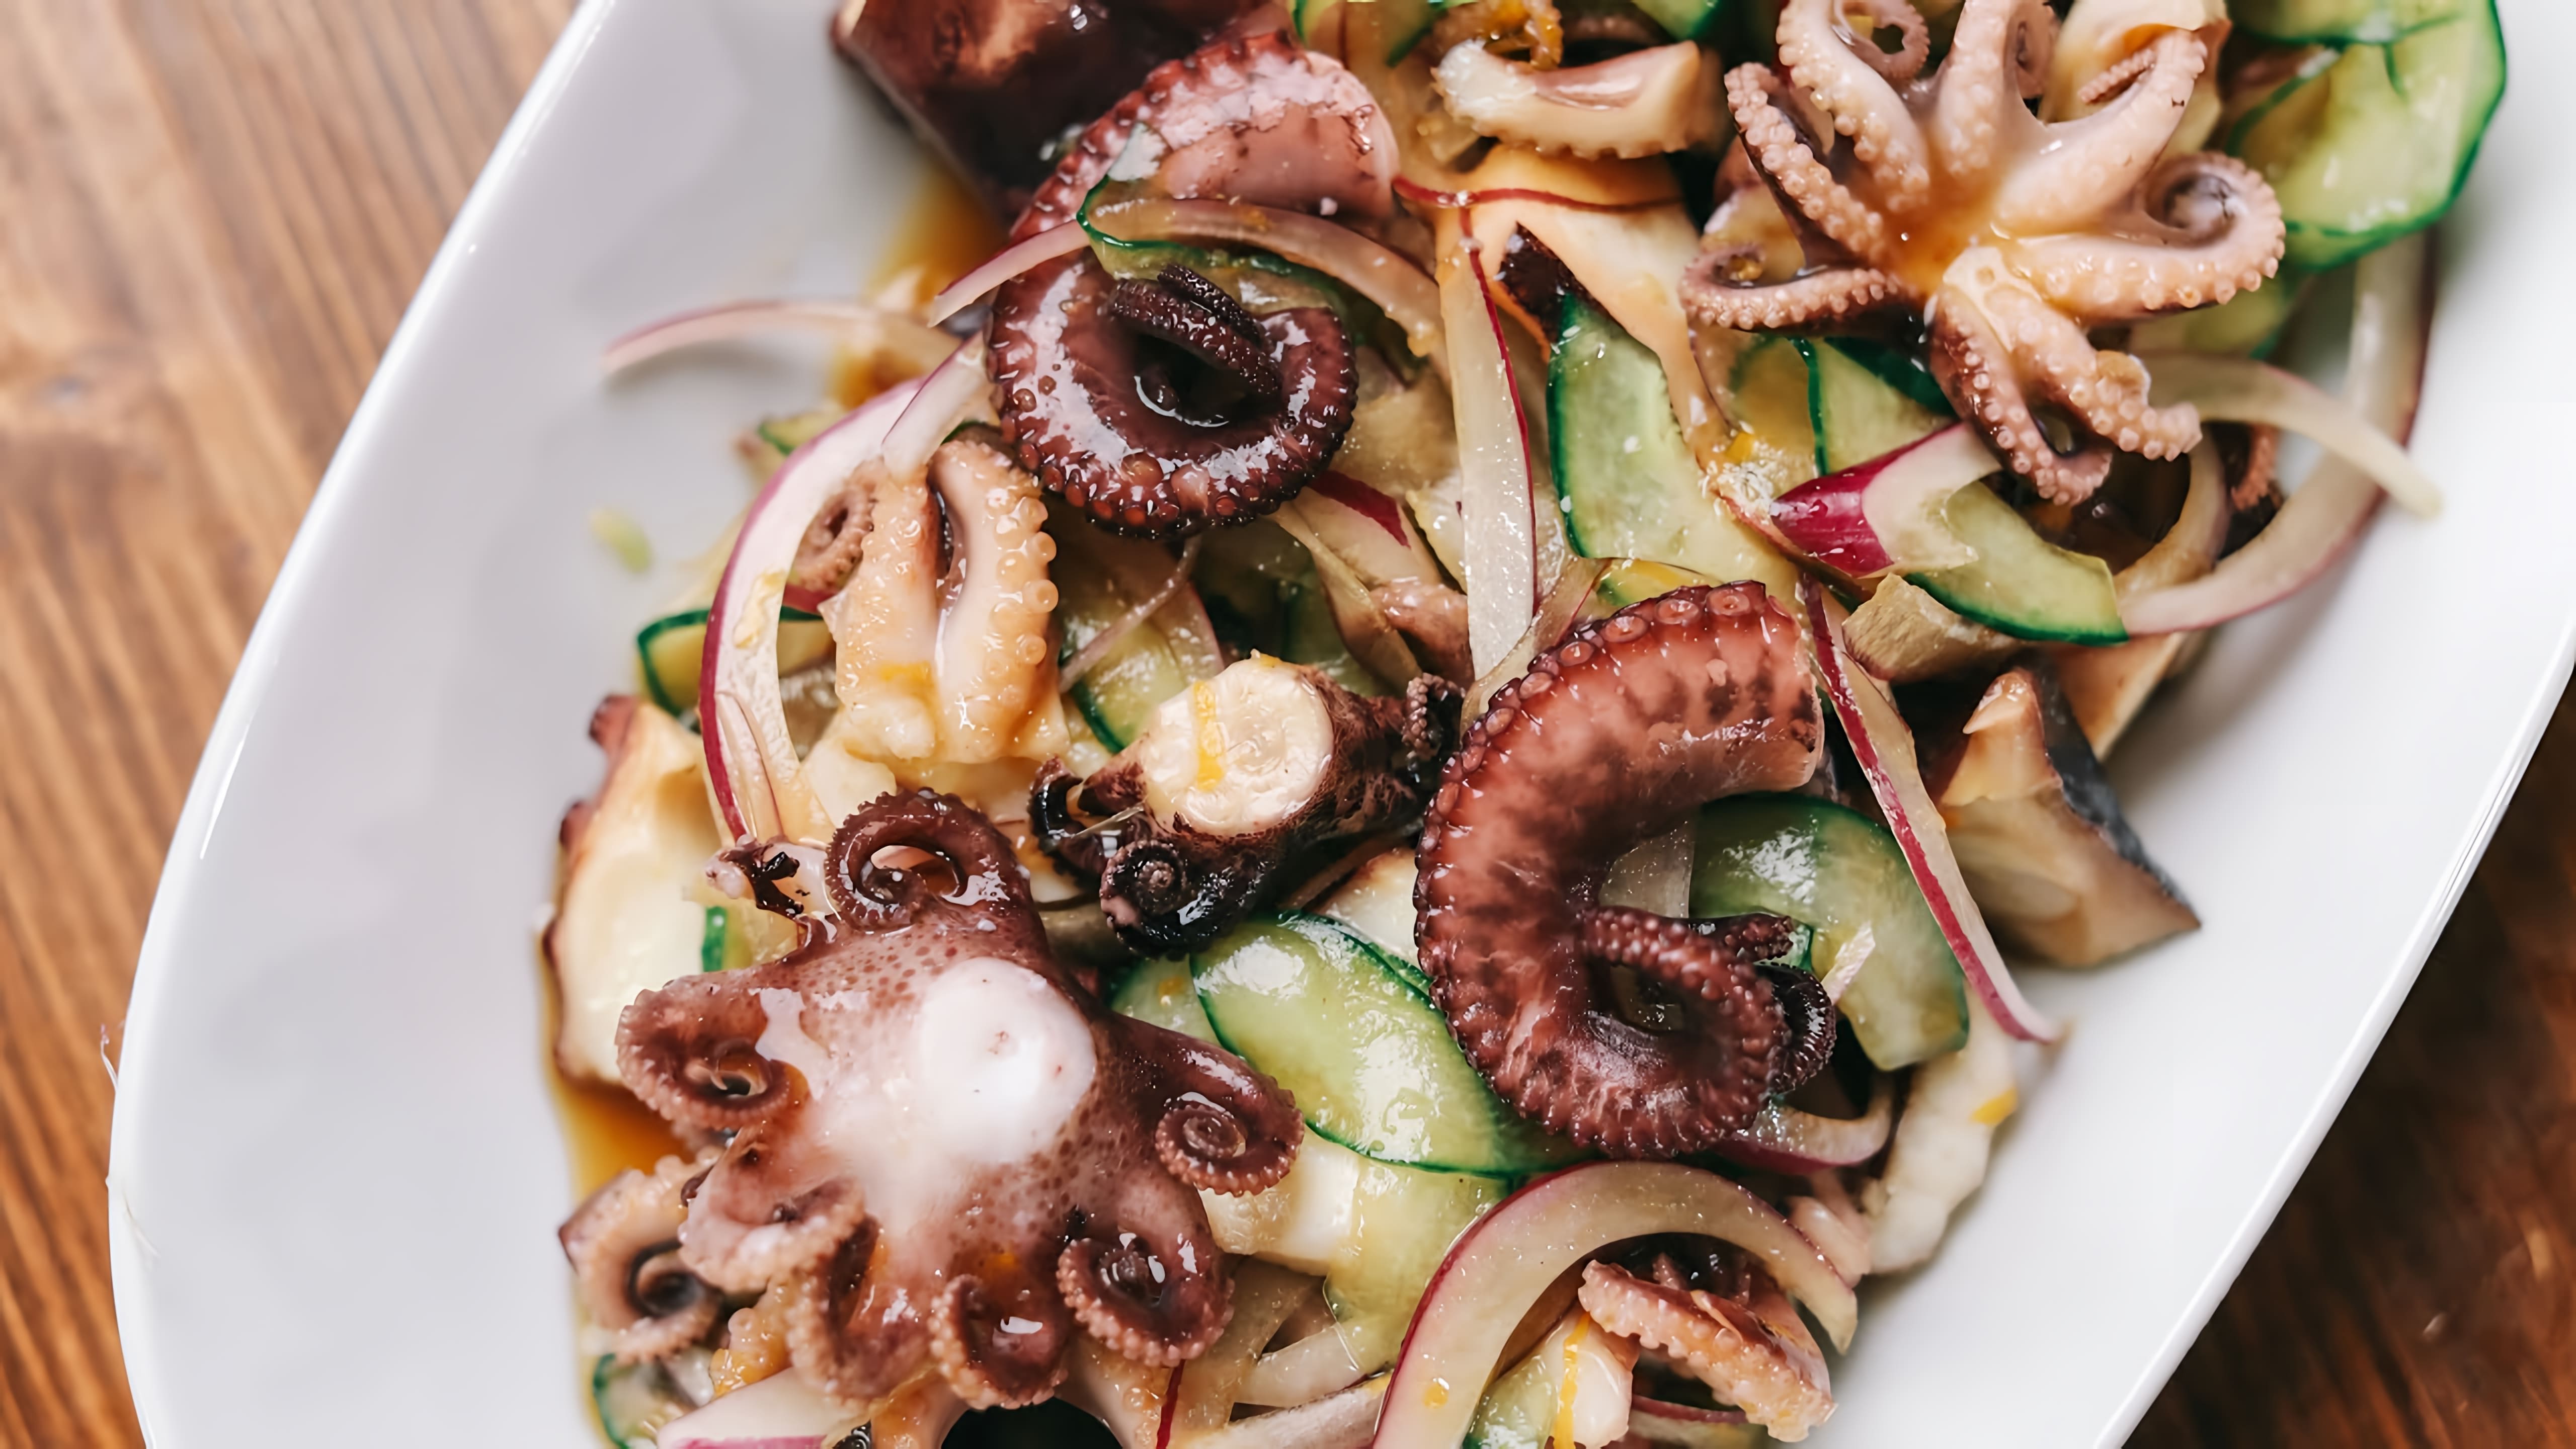 Салат из осьминогов с азиатской заправкой - это вкусное и оригинальное блюдо, которое можно приготовить в домашних условиях